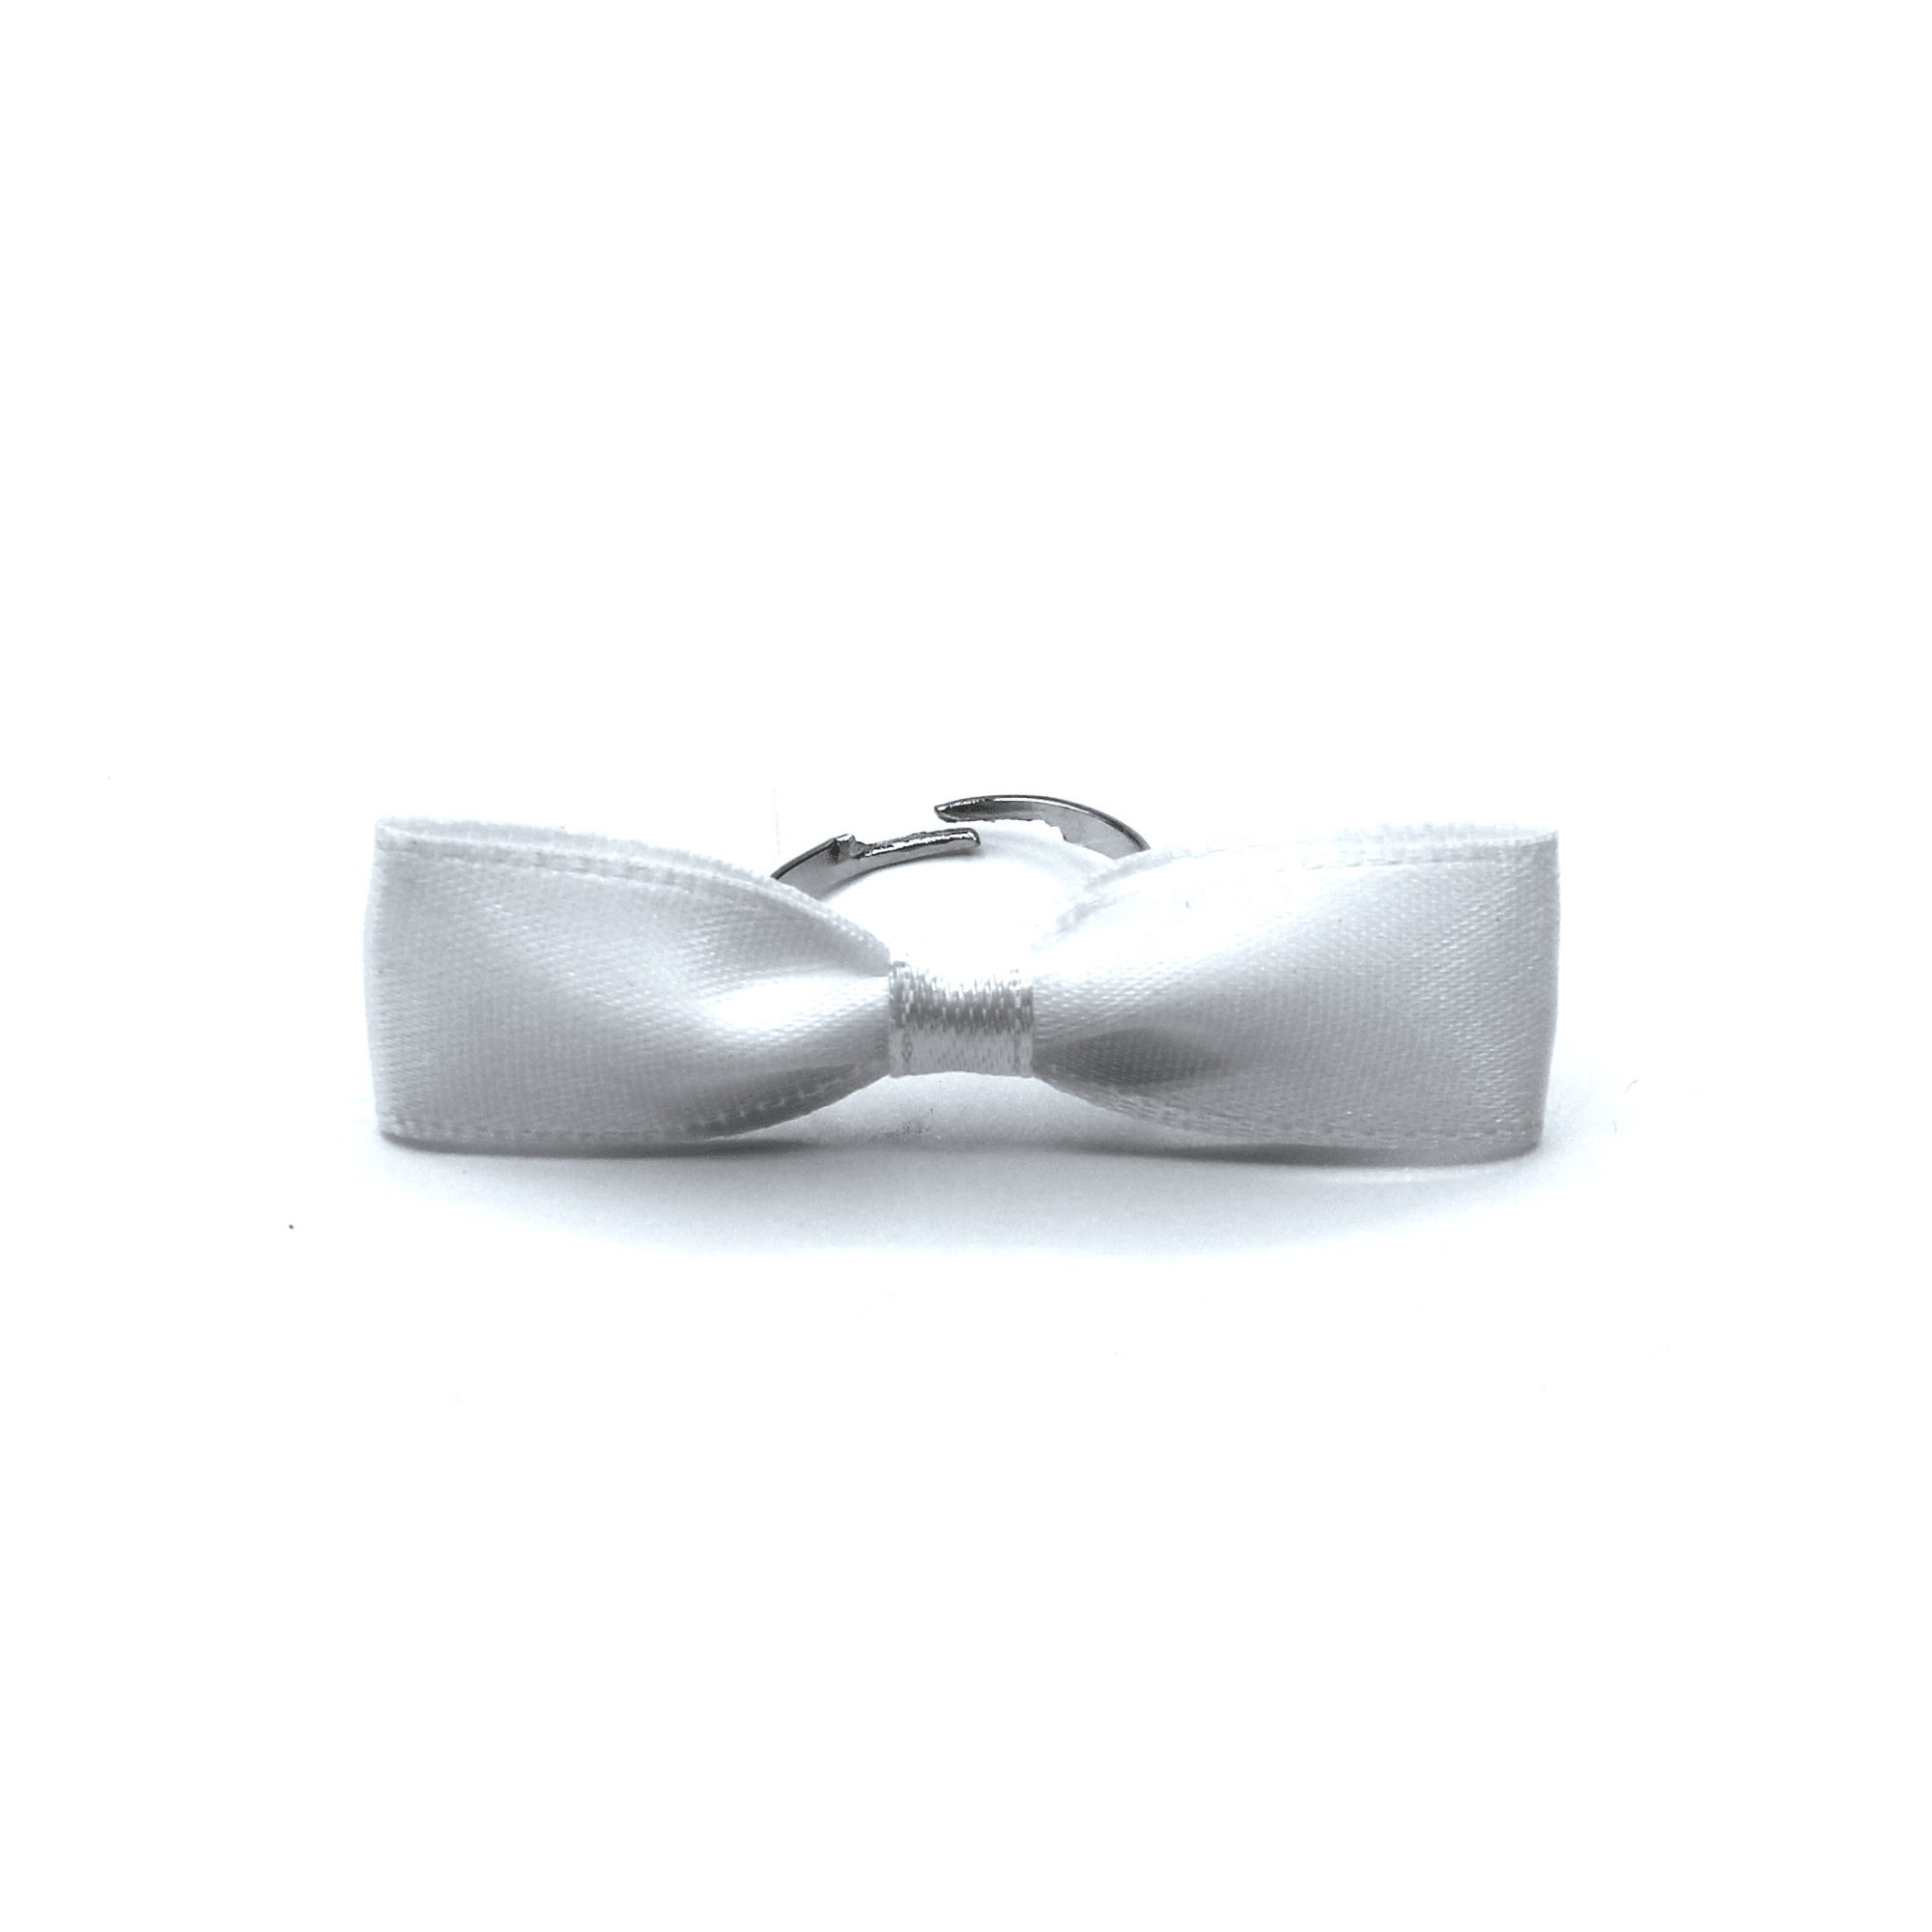 White Satin Bow Ring on White Background